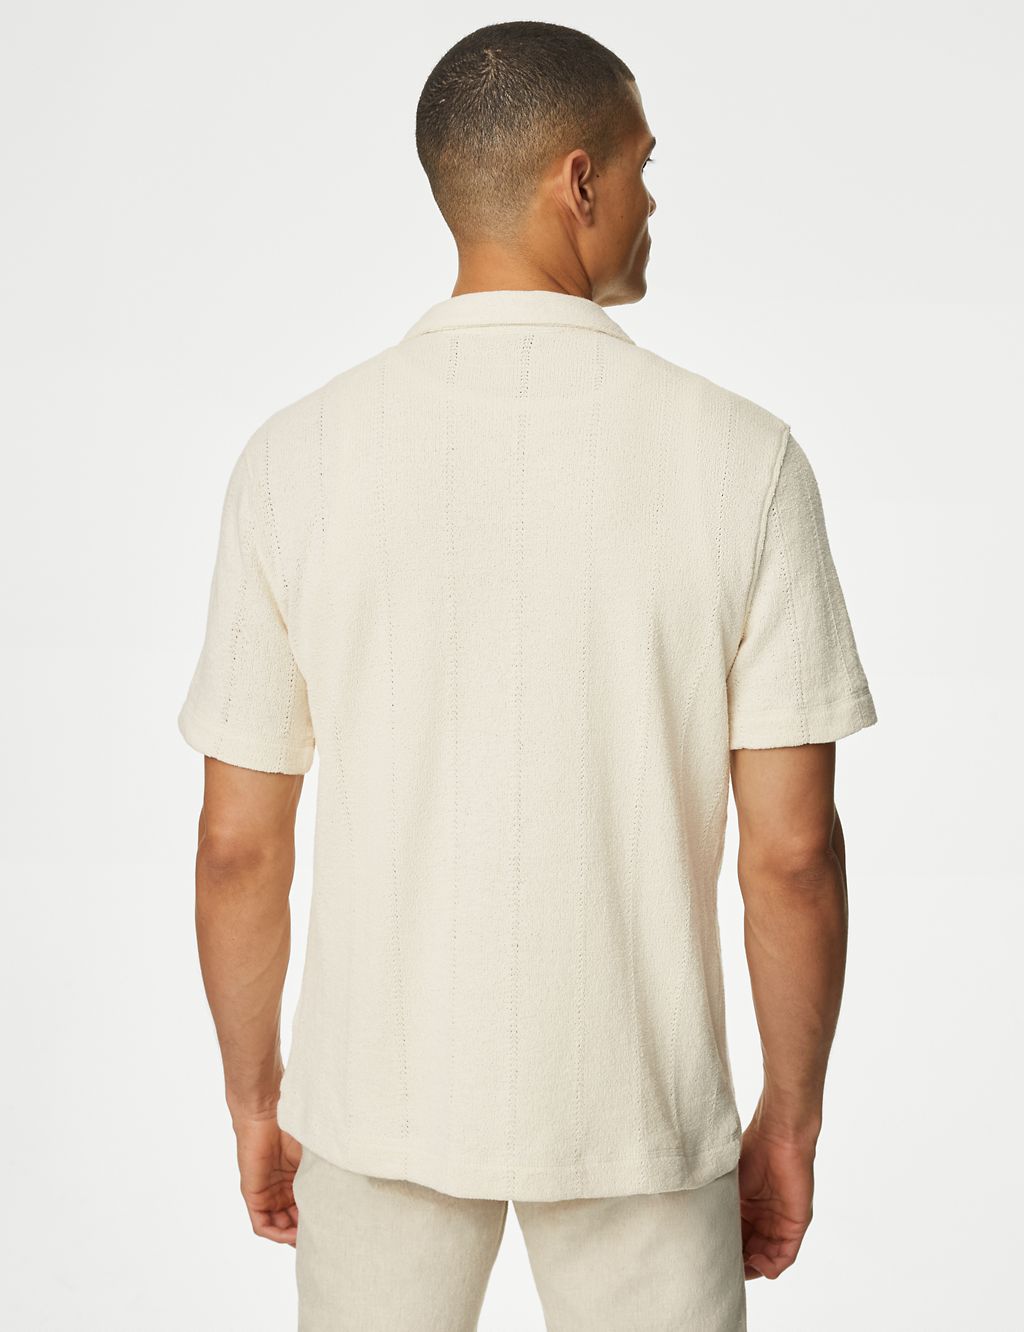 Cotton Rich Textured Shirt 5 of 5